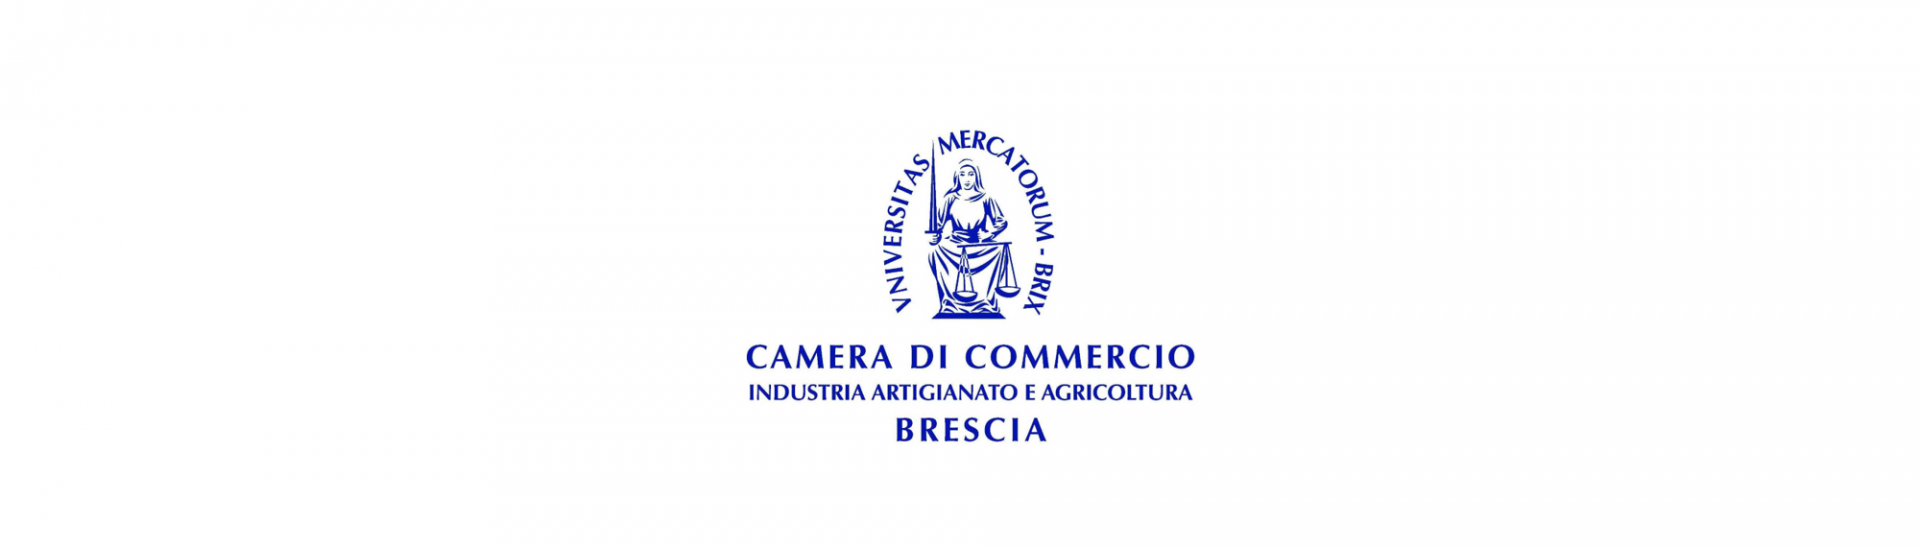 Camera di Commercio Brescia - 